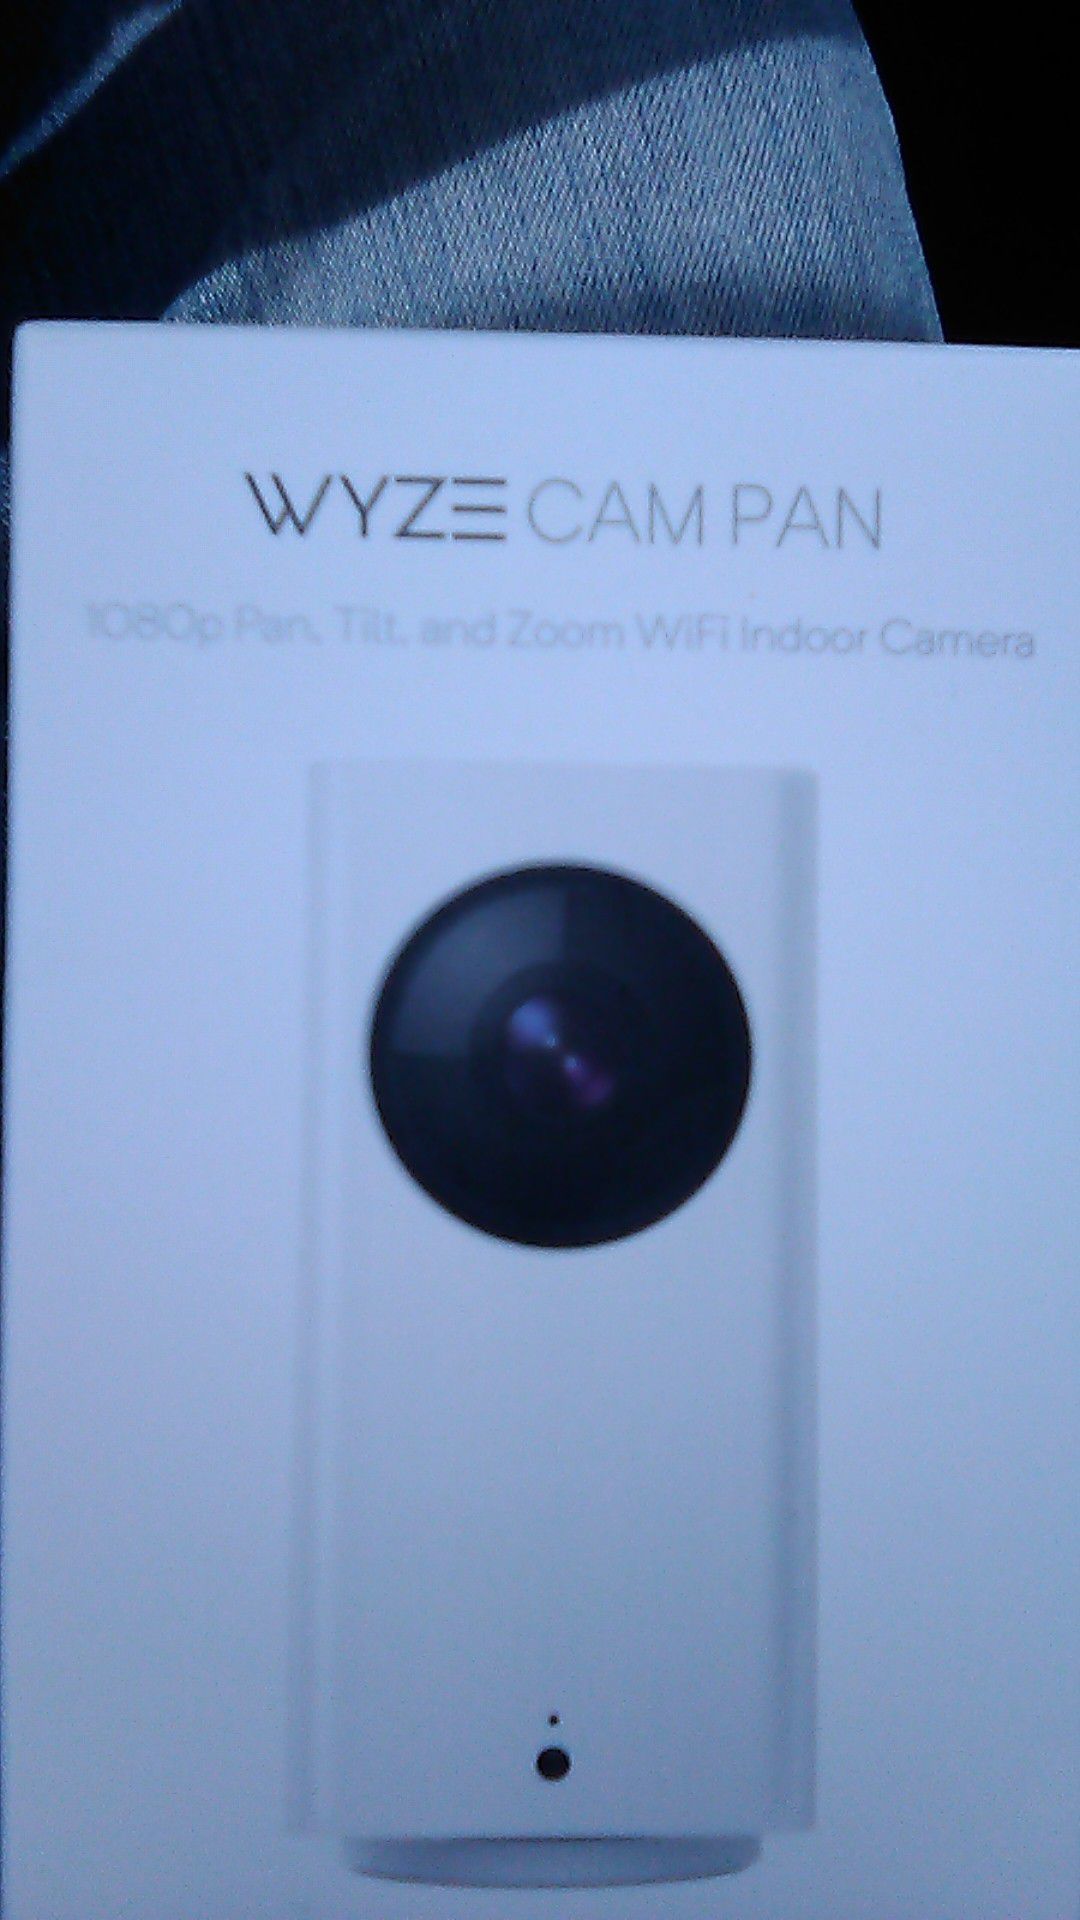 WYZE CAM PAN 1080P PAN,TILT, AND ZOOM WIFI INDOOR CAMERA